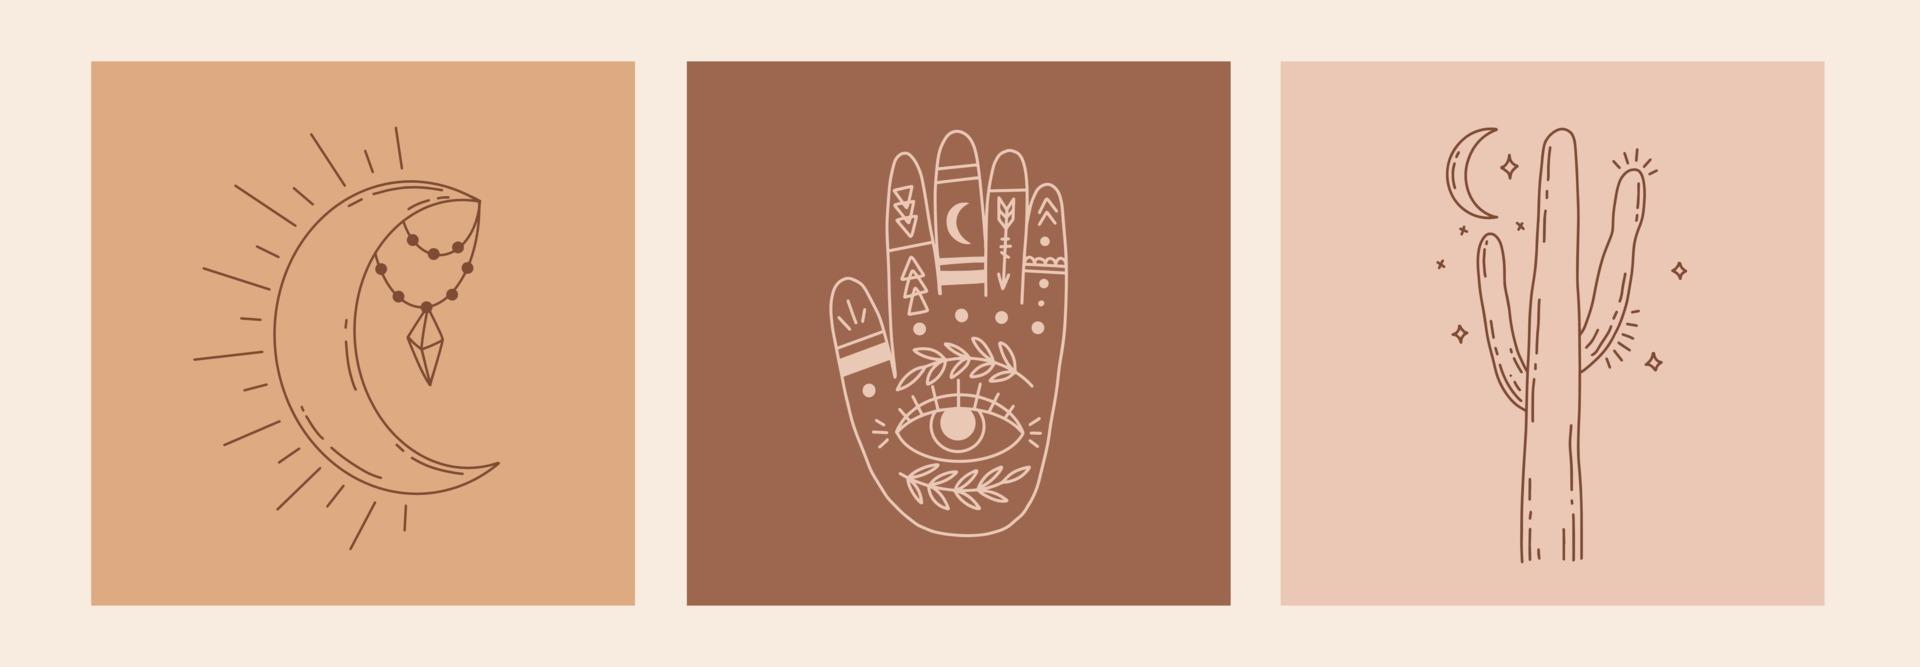 boho místico doodle conjunto esotérico. pôster de arte linha mágica com as mãos, cacto, lua e estrelas. ilustração em vetor moderno boêmio